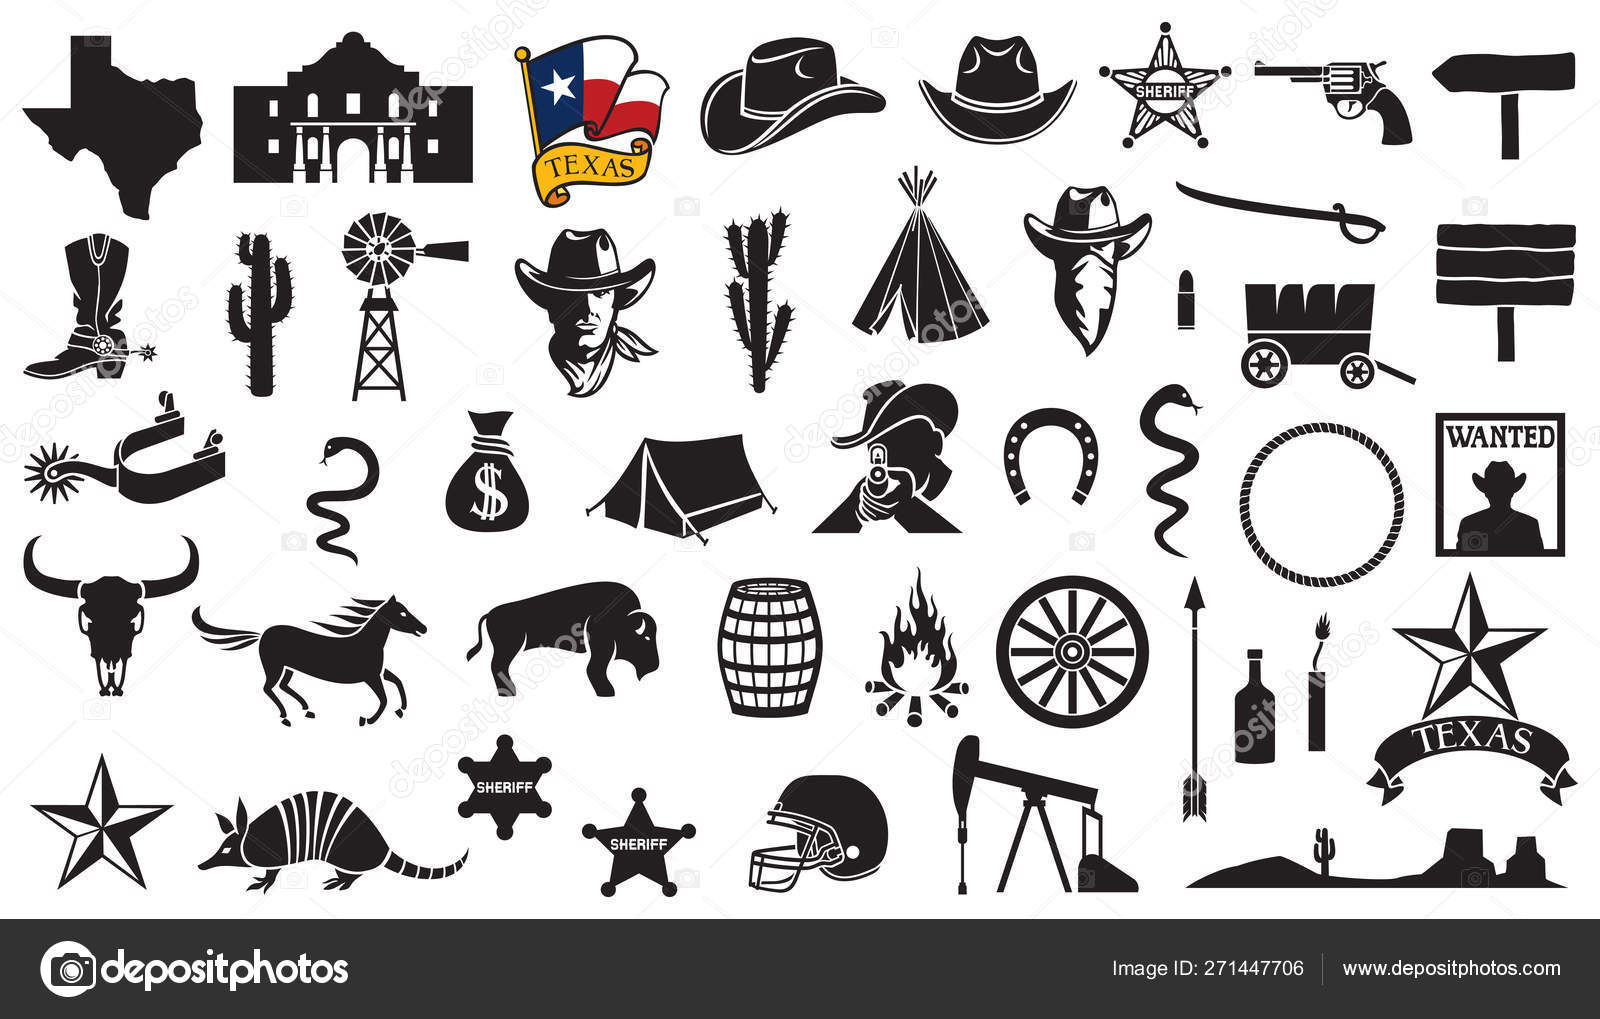 Piratenflagge Vektorgrafiken und Vektor-Icons zum kostenlosen Download